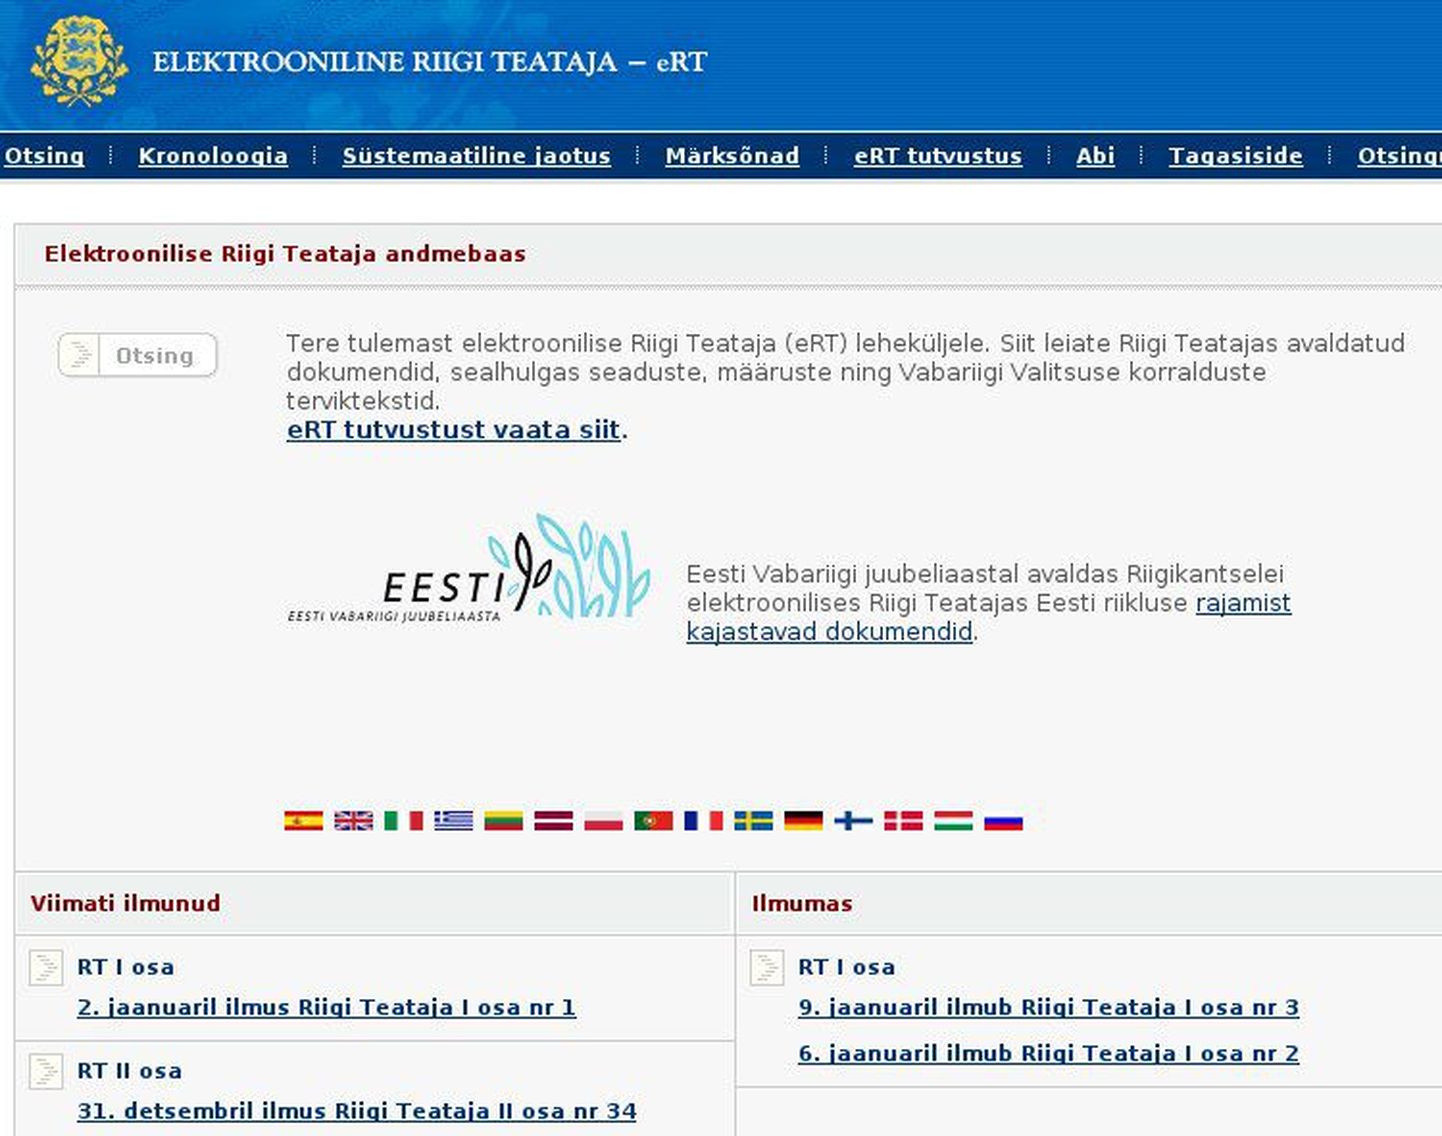 Законодательные акты доступны на эстонском языке на портале Riigiteataja.ee.